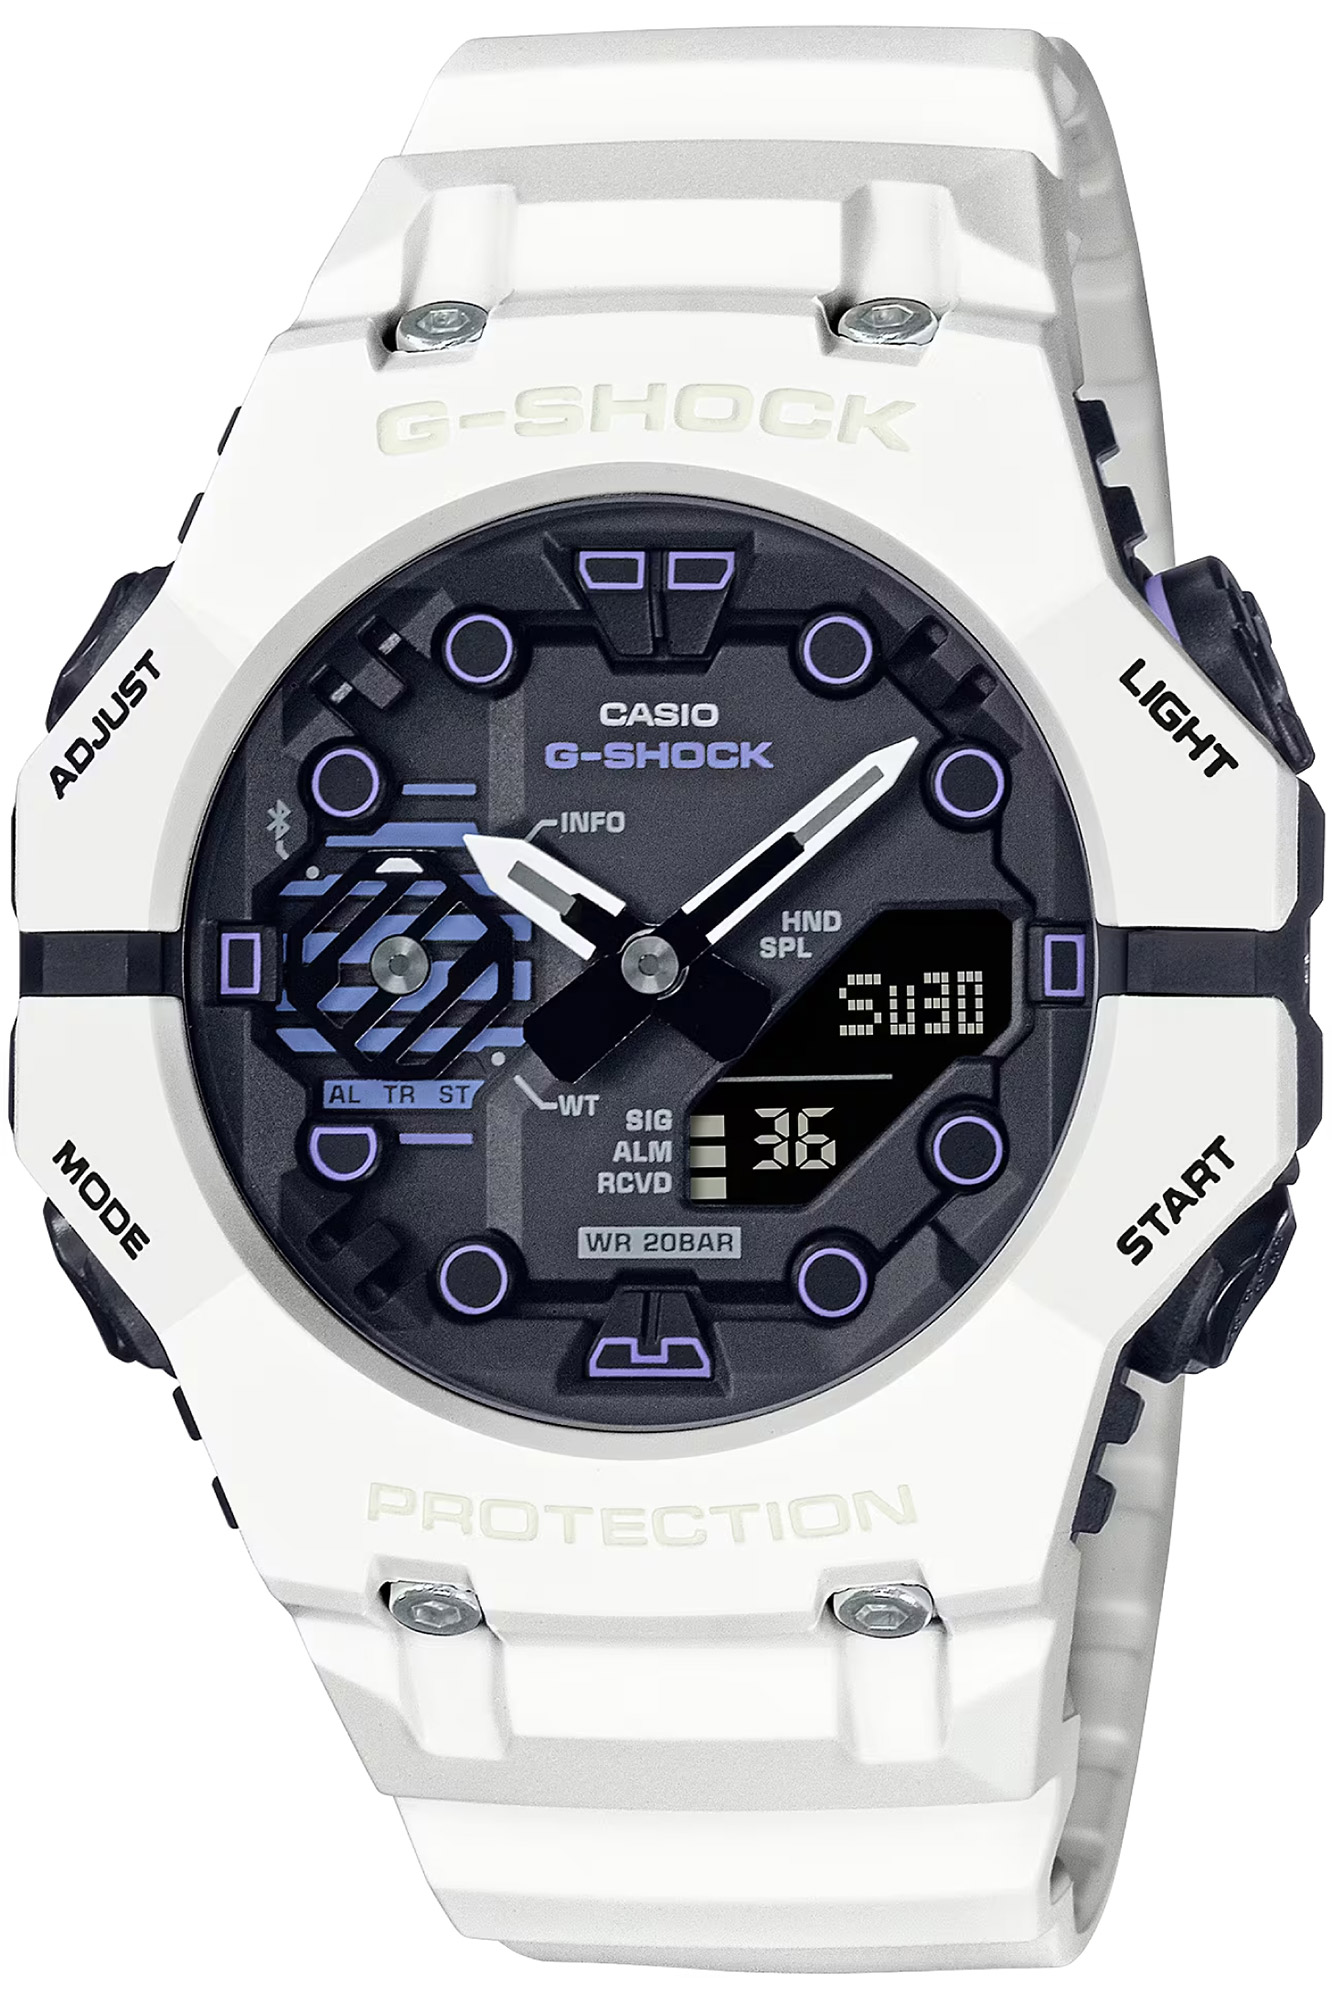 Watch CASIO G-Shock ga-b001sf-7aer